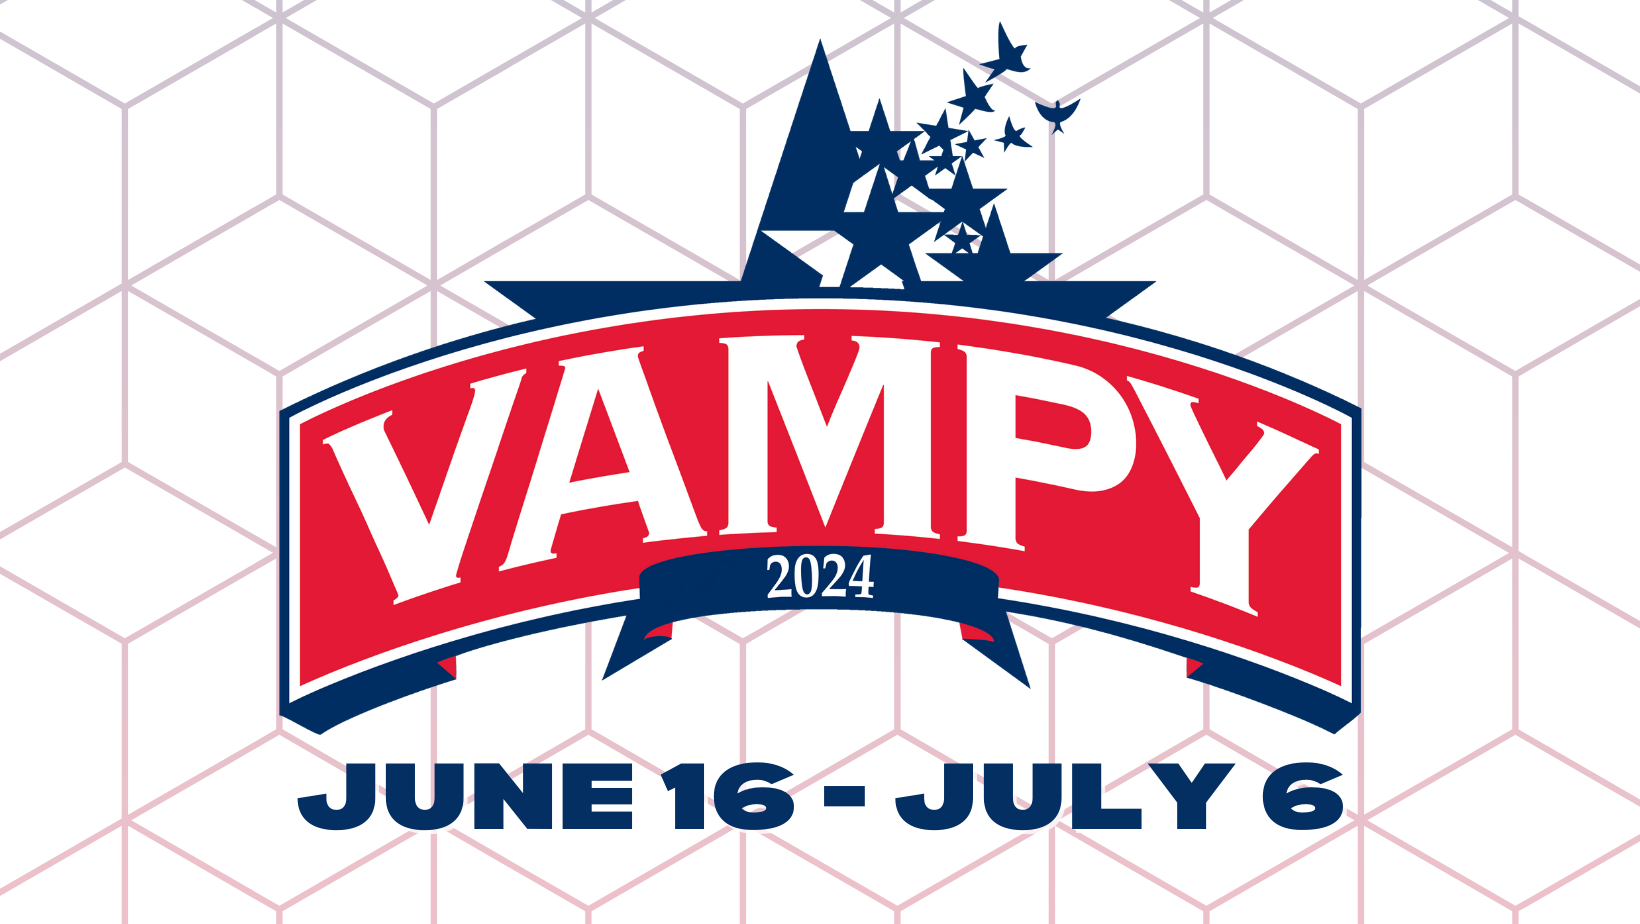 vampy 2024 june 16